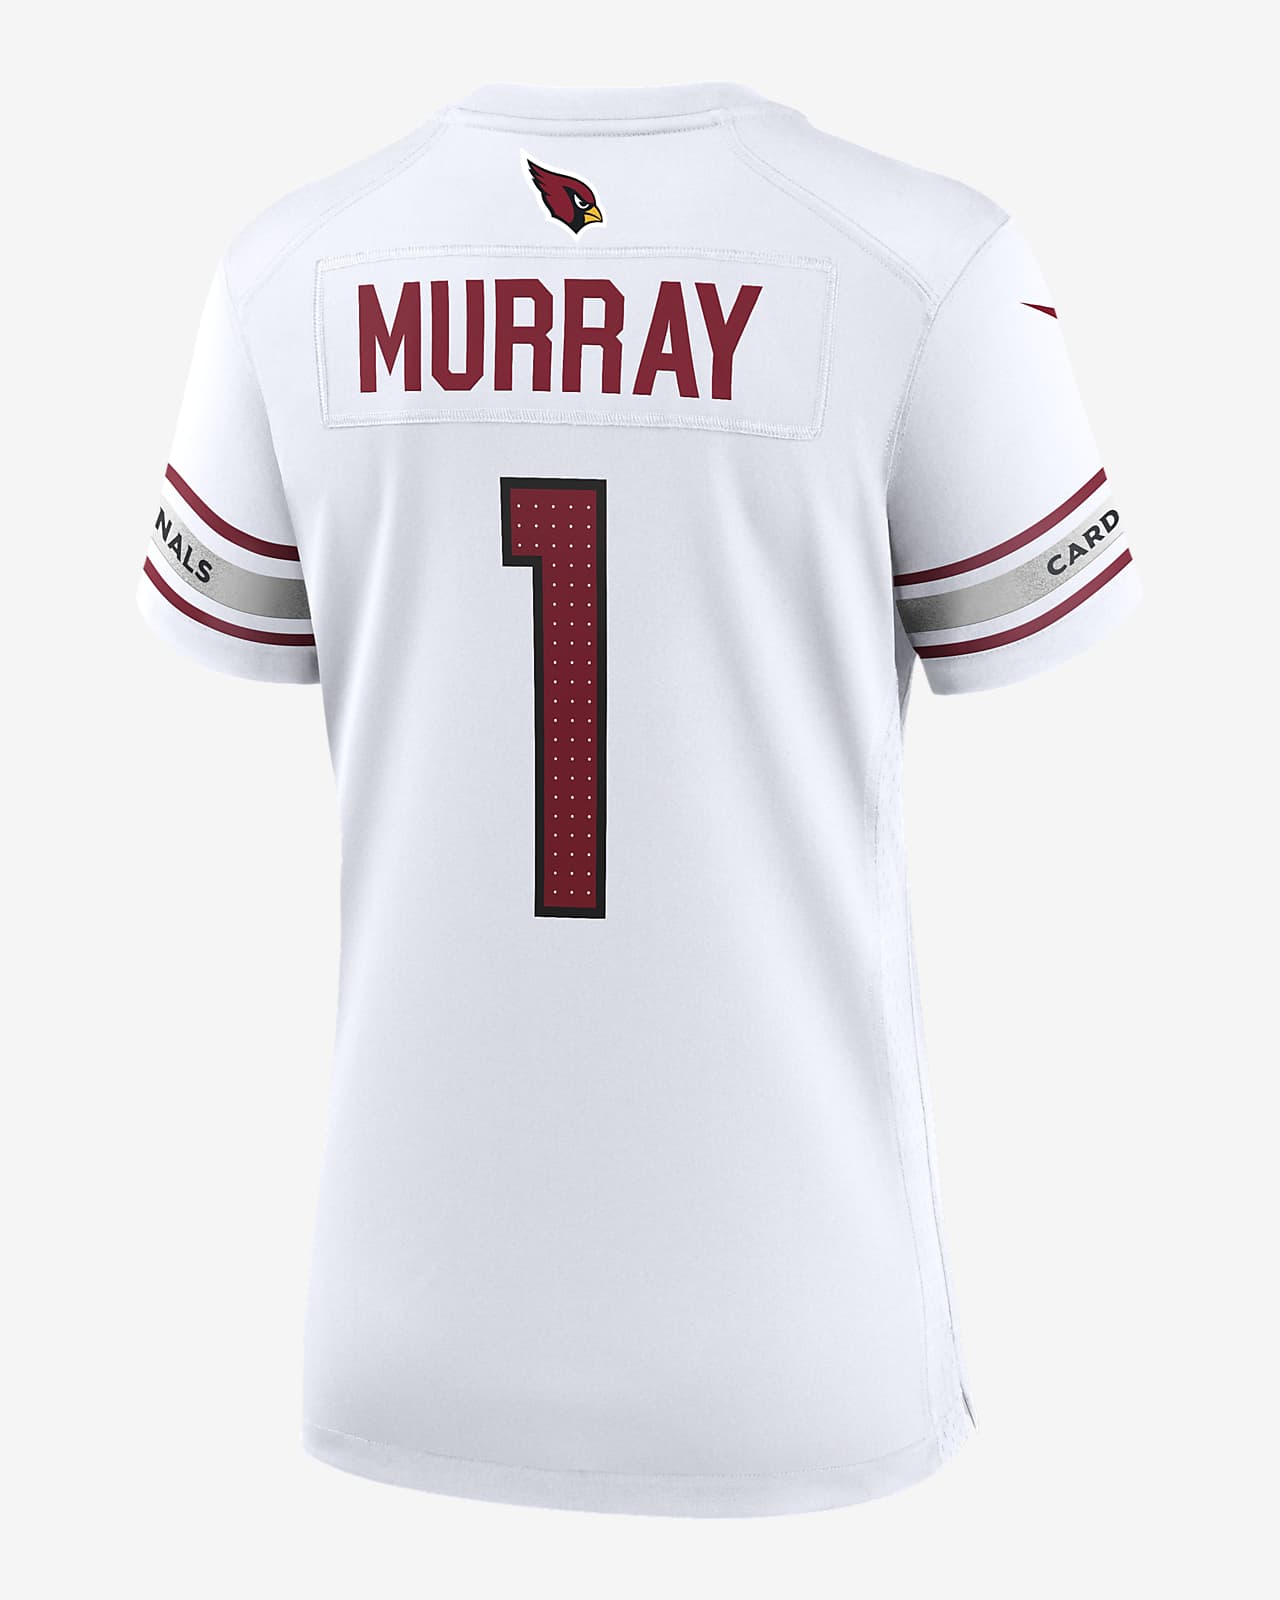 Kyler Murray Arizona Cardinals Women's Nike NFL Game Football Jersey.